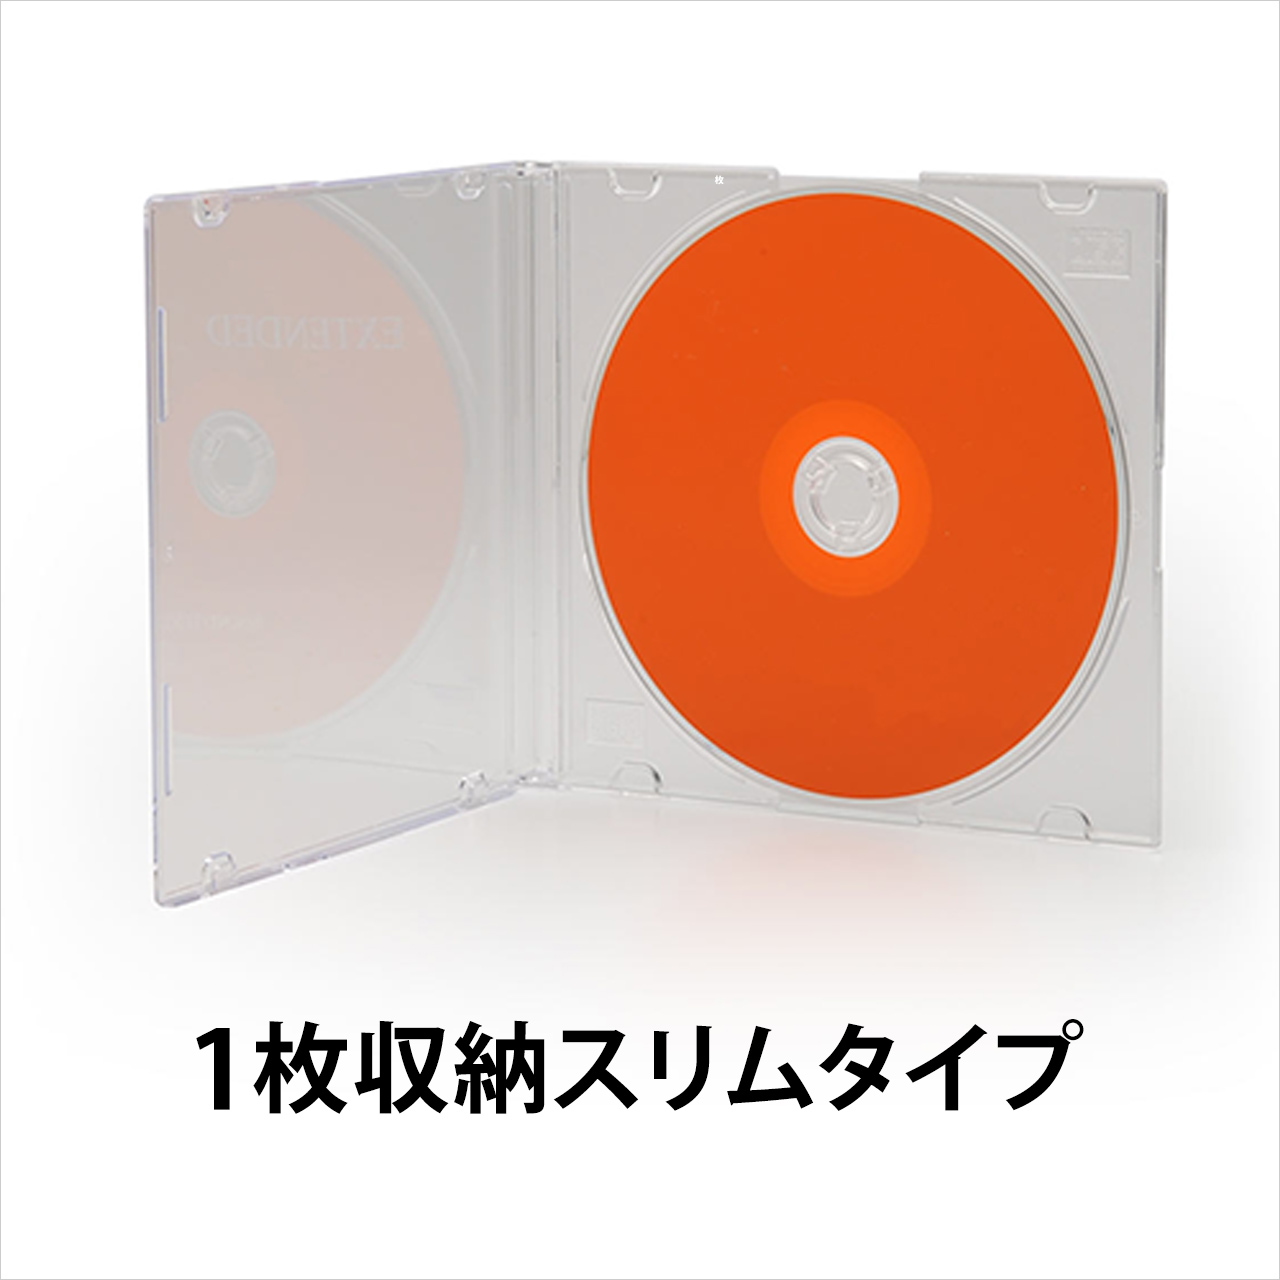 DVDケース CDケース 50枚セット ブルーレイケース Blu-ray ジュエルケース プラケース スリム 薄型 10mm CD DVD BD 1枚収納 200-FCD024